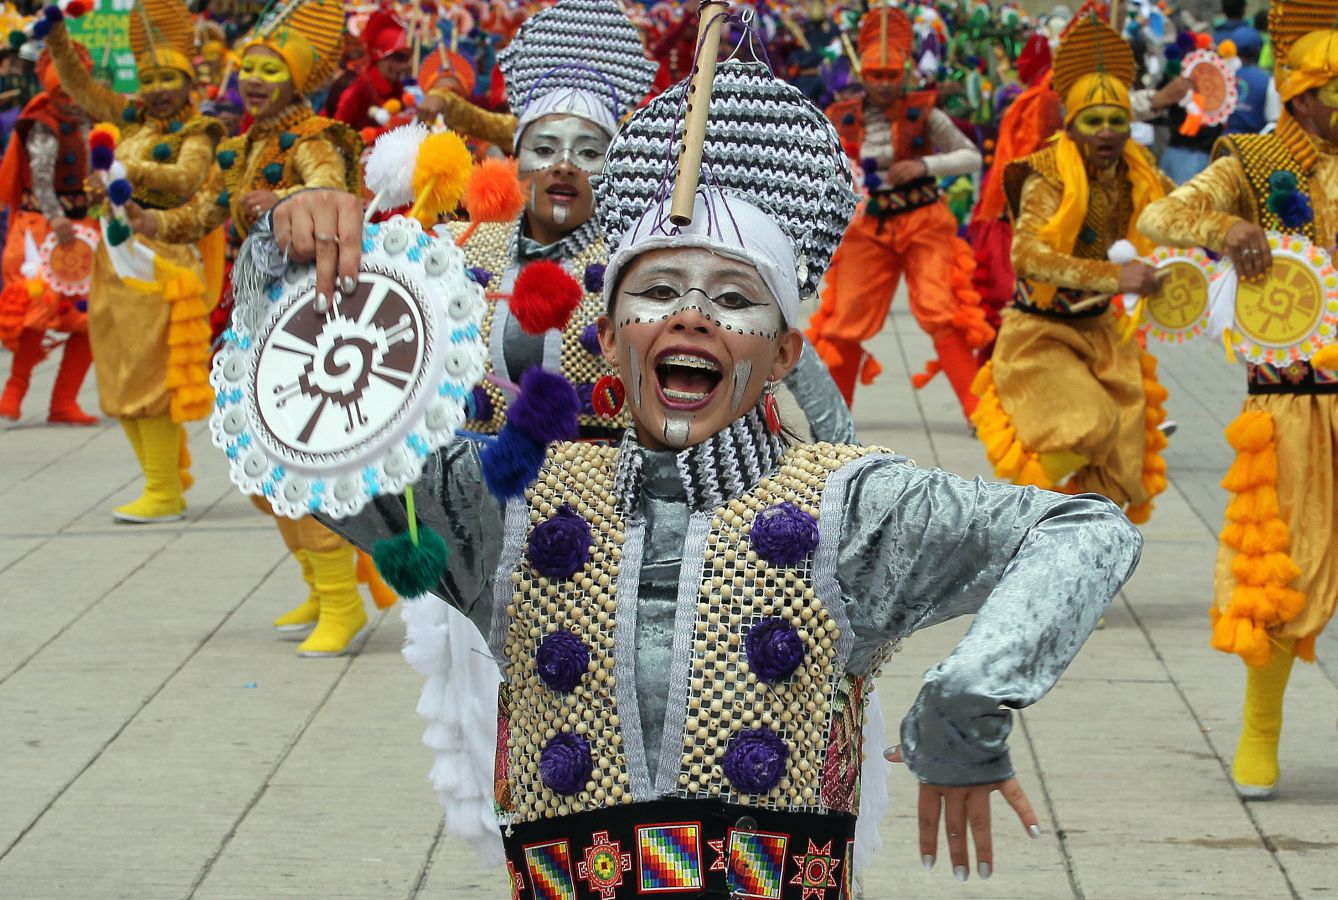 El Carnaval de Negros y Blancos inunda de color, alegría y bailes las calles de la localidad colombiana de Pasto